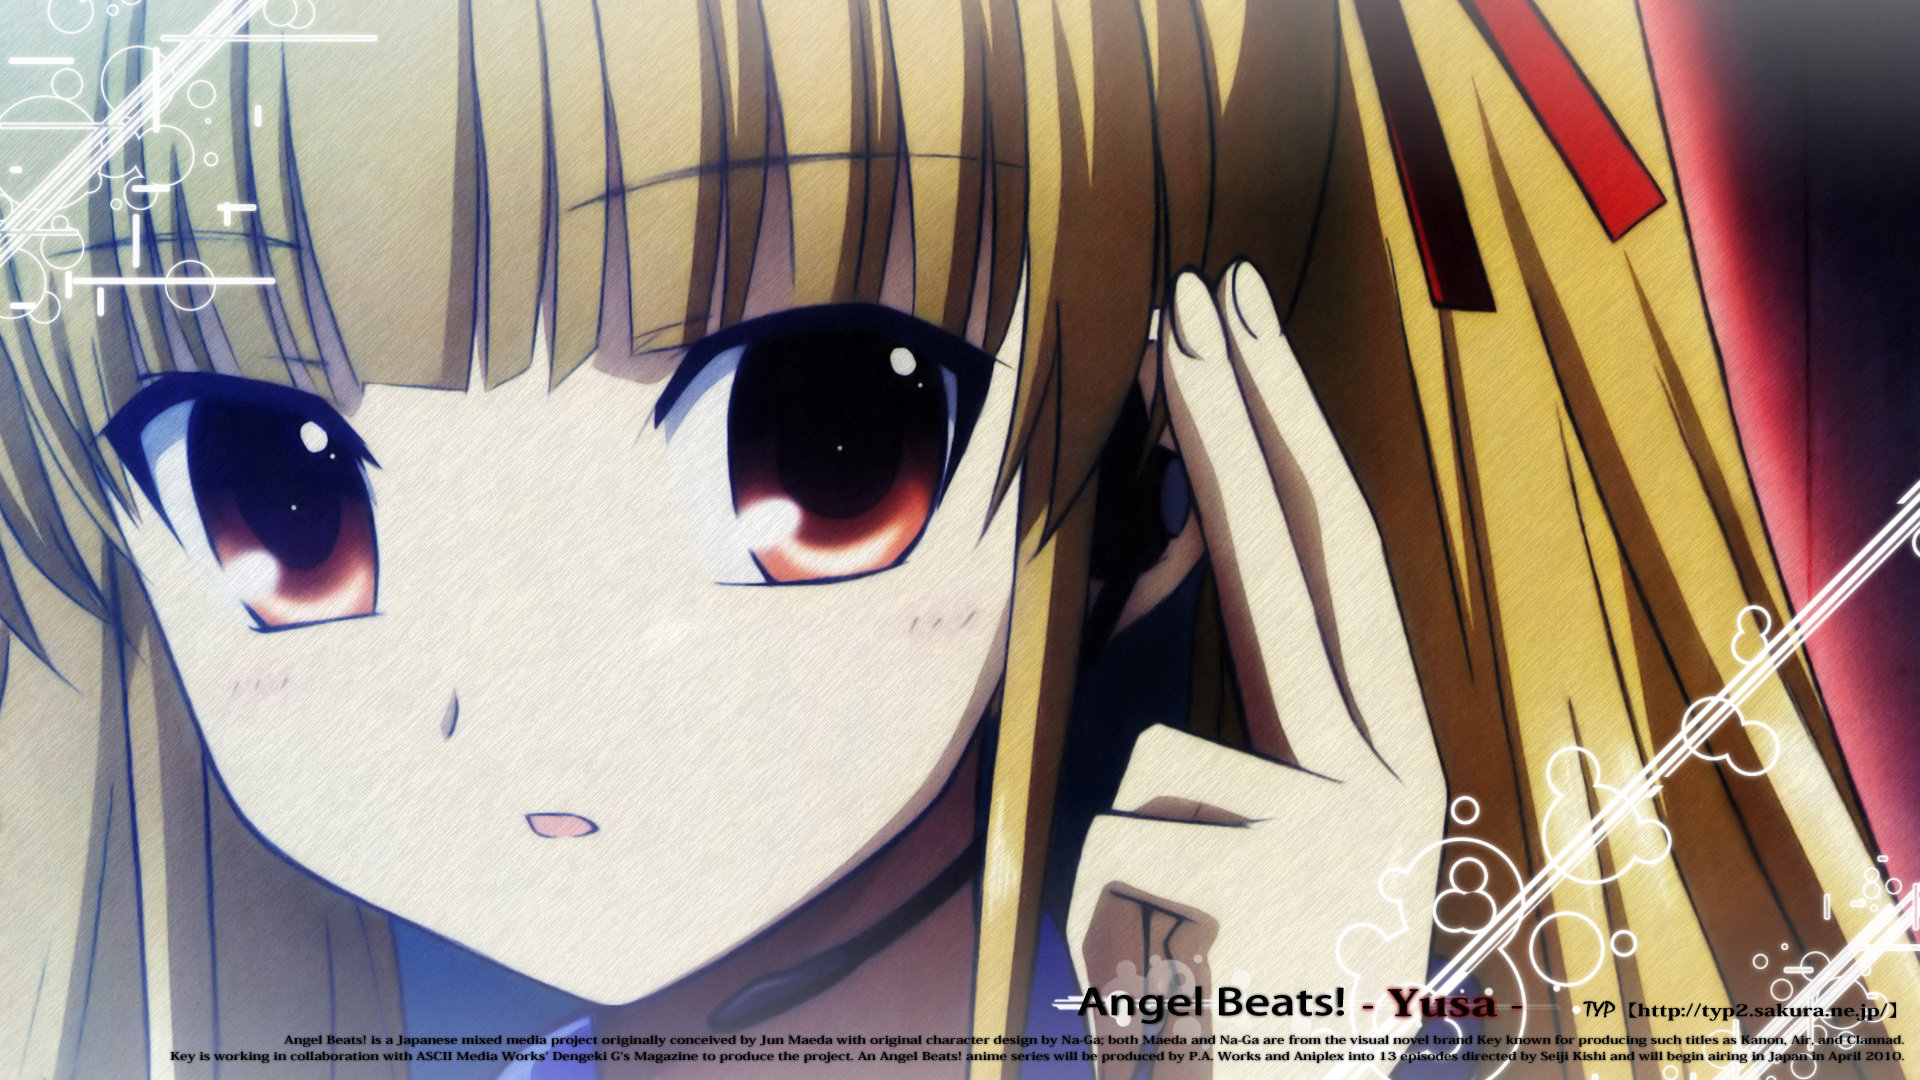 High resolution Yusa (Angel Beats!) hd 1080p wallpaper ID:235329 for desktop